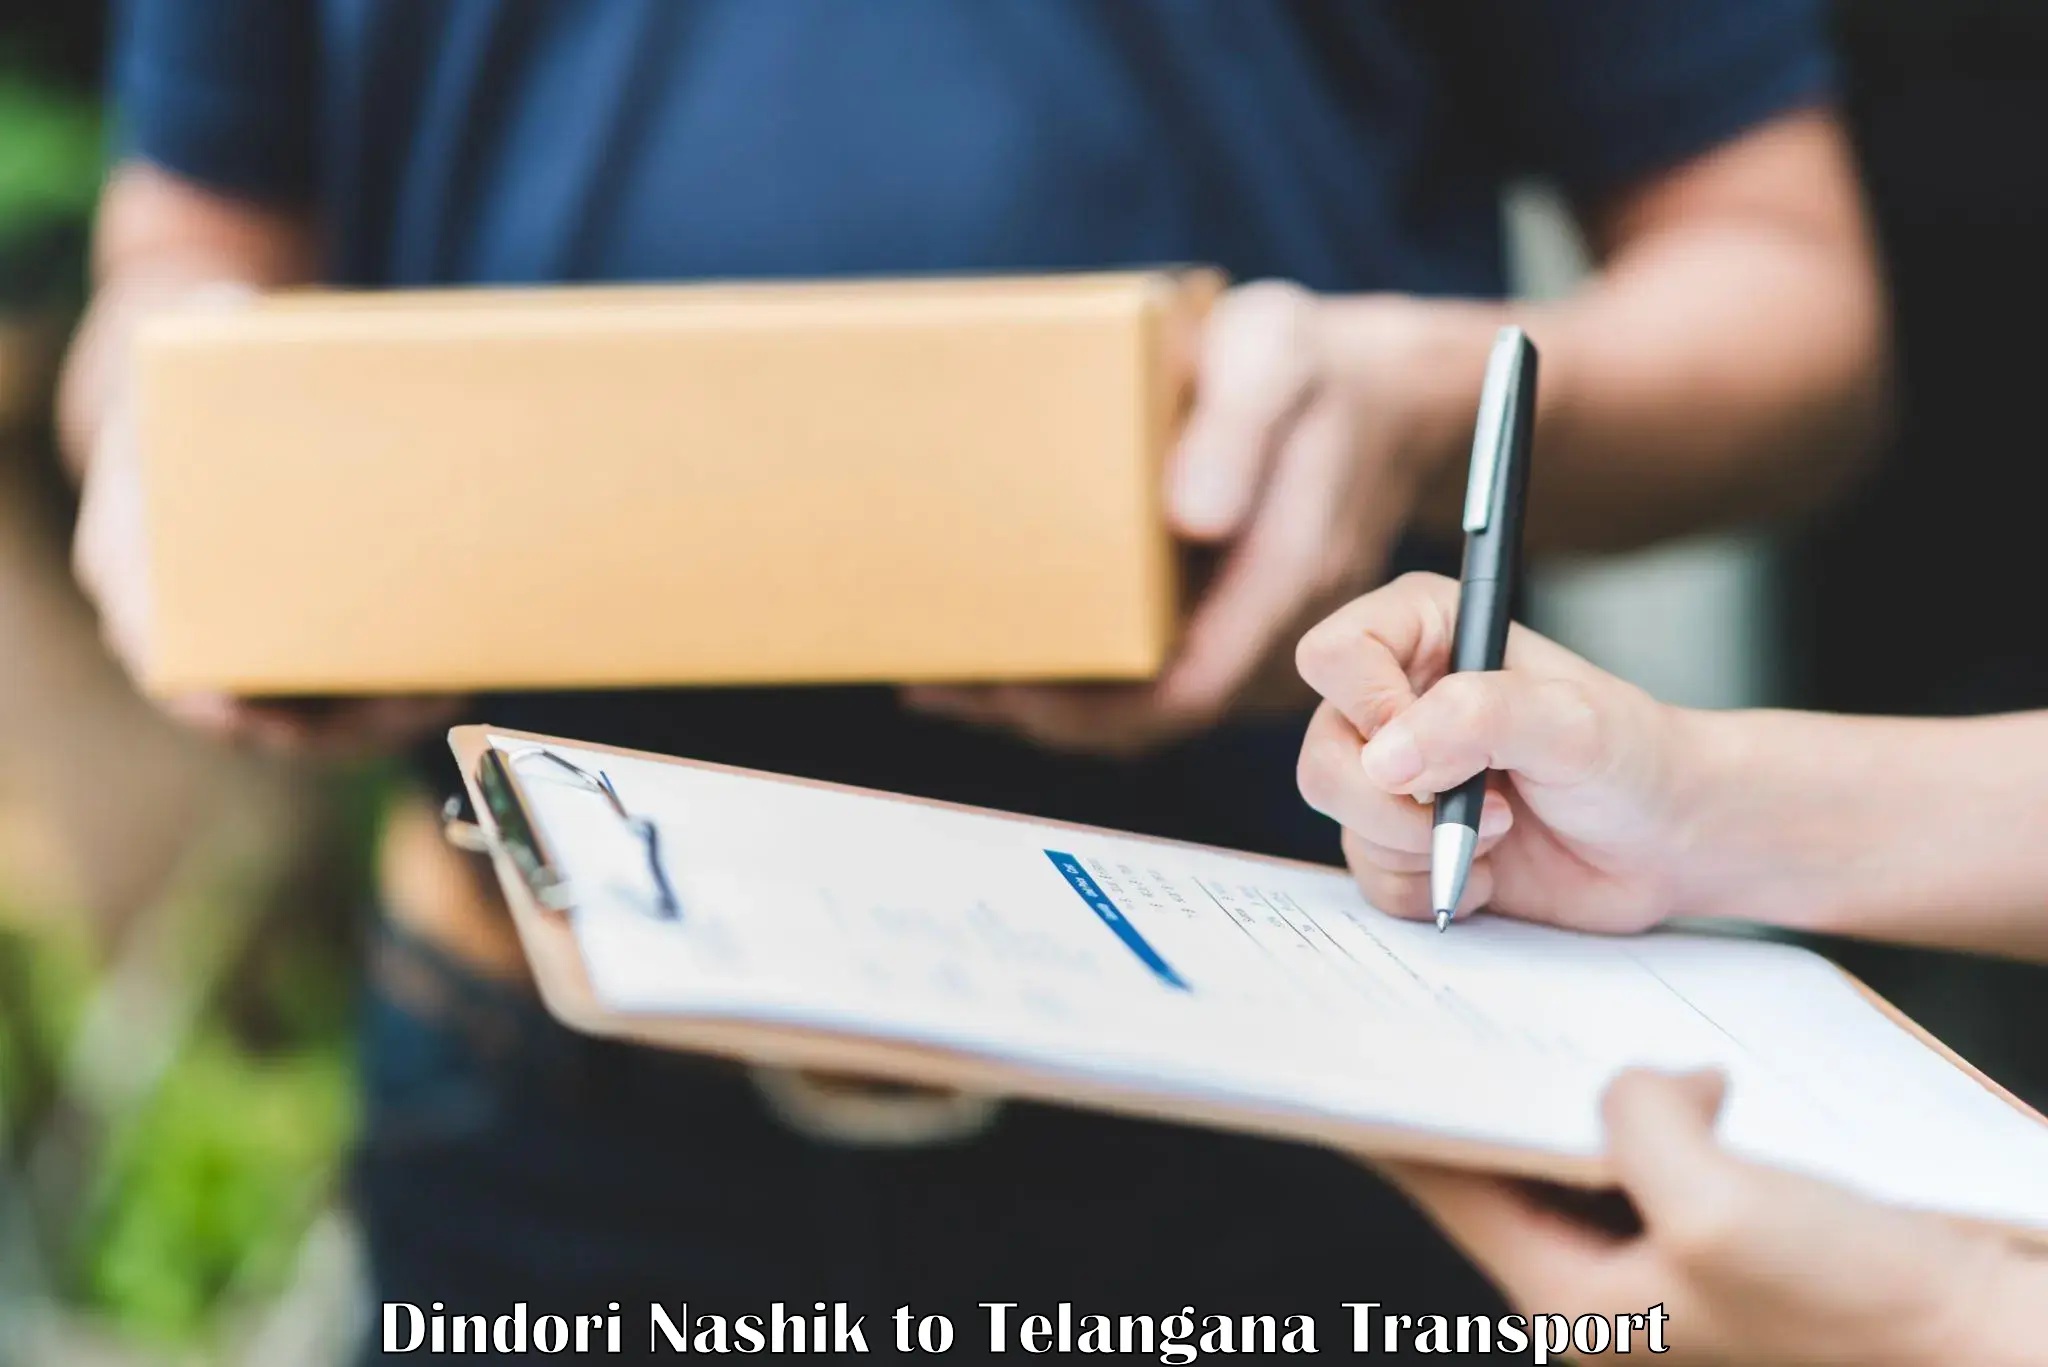 Transport in sharing Dindori Nashik to Khammam